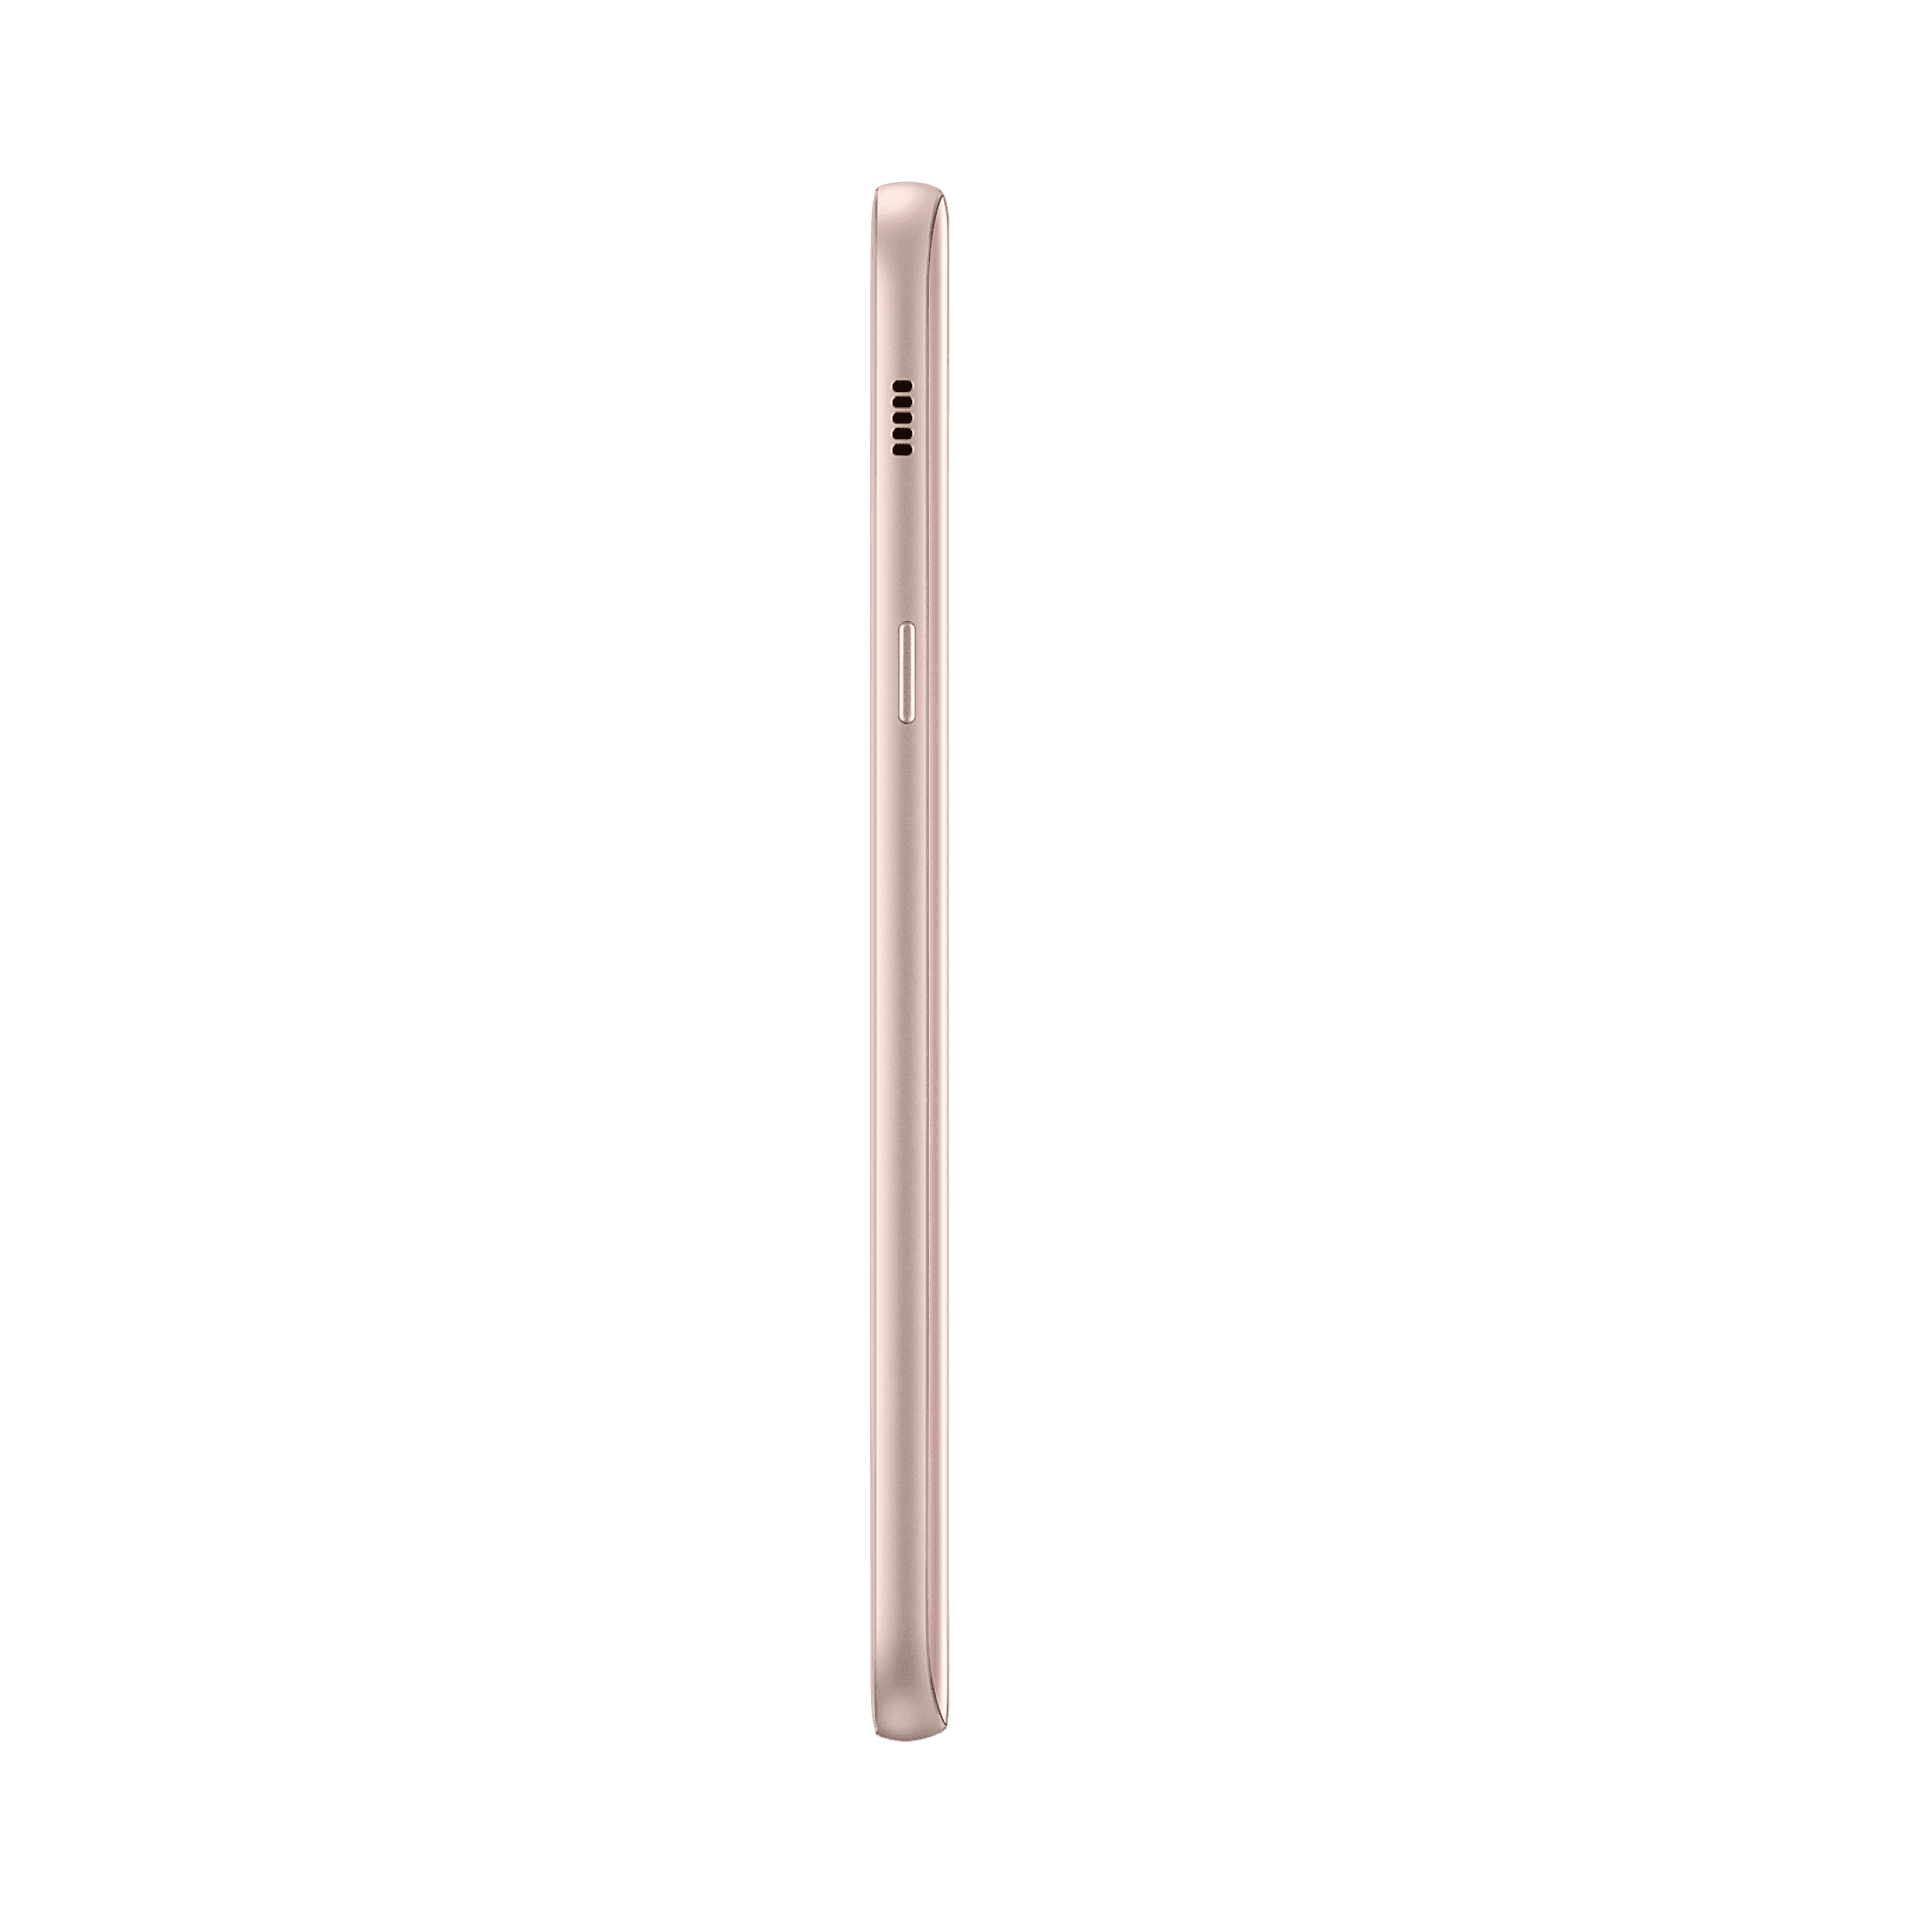 Samsung Galaxy A7 (2017) - 32 GB - Şeftali Bulutu